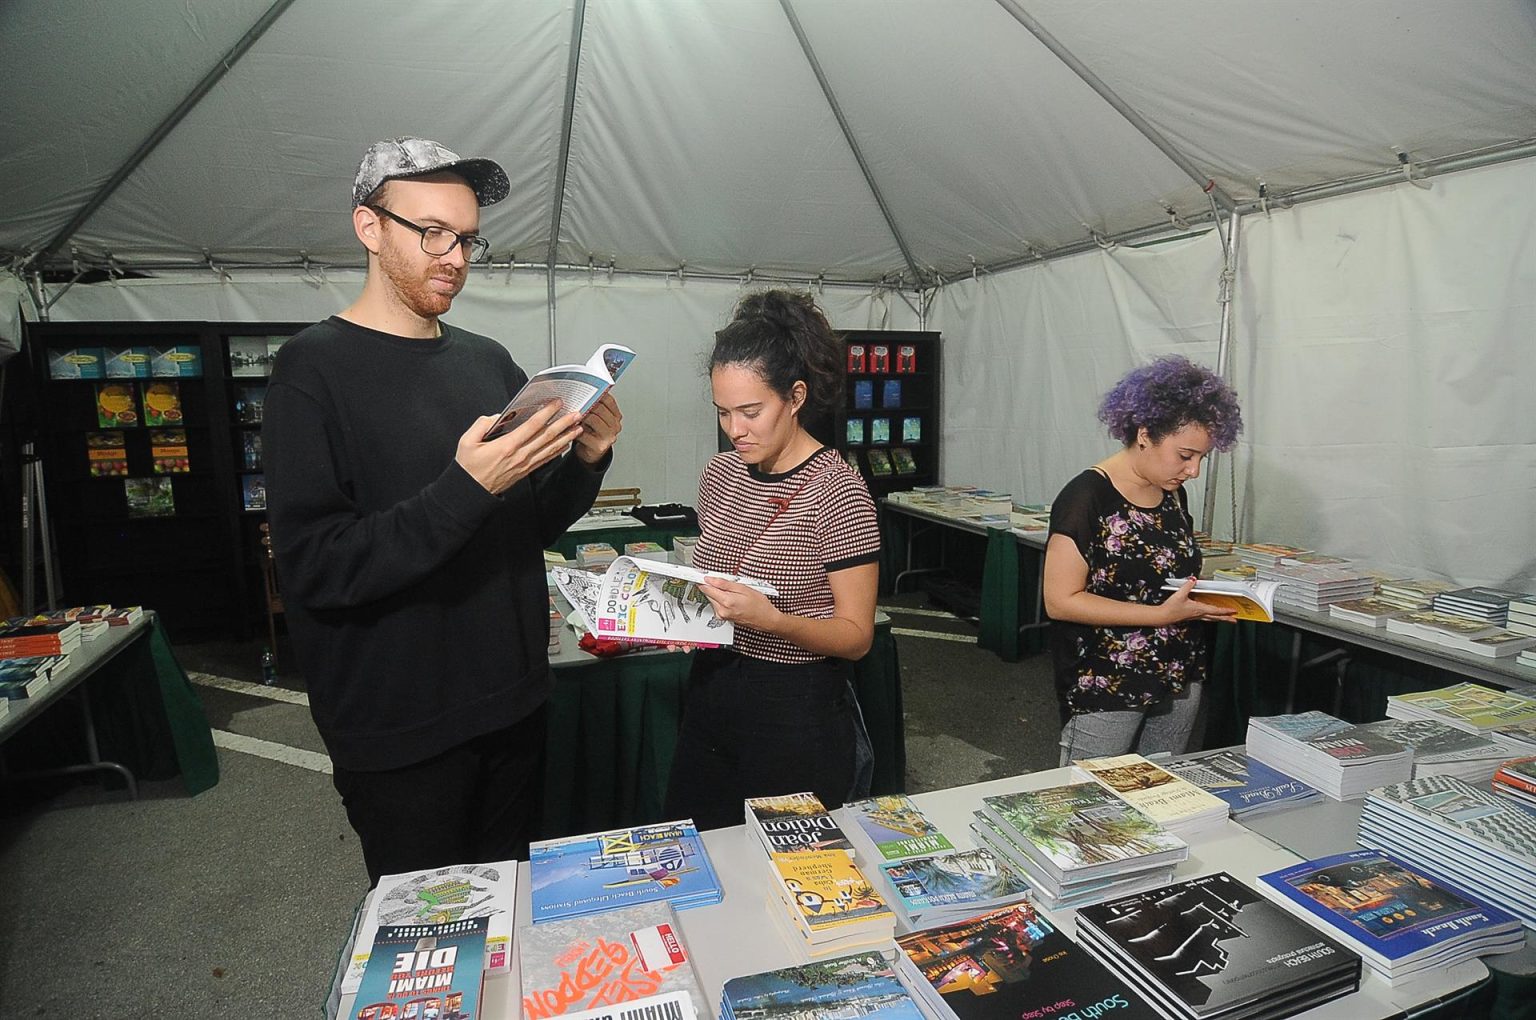 Asistentes observan novelas gráficas durante la Feria Internacional del Libro de Miami. Imagen de archivo. EFE/Gastón de Cárdenas